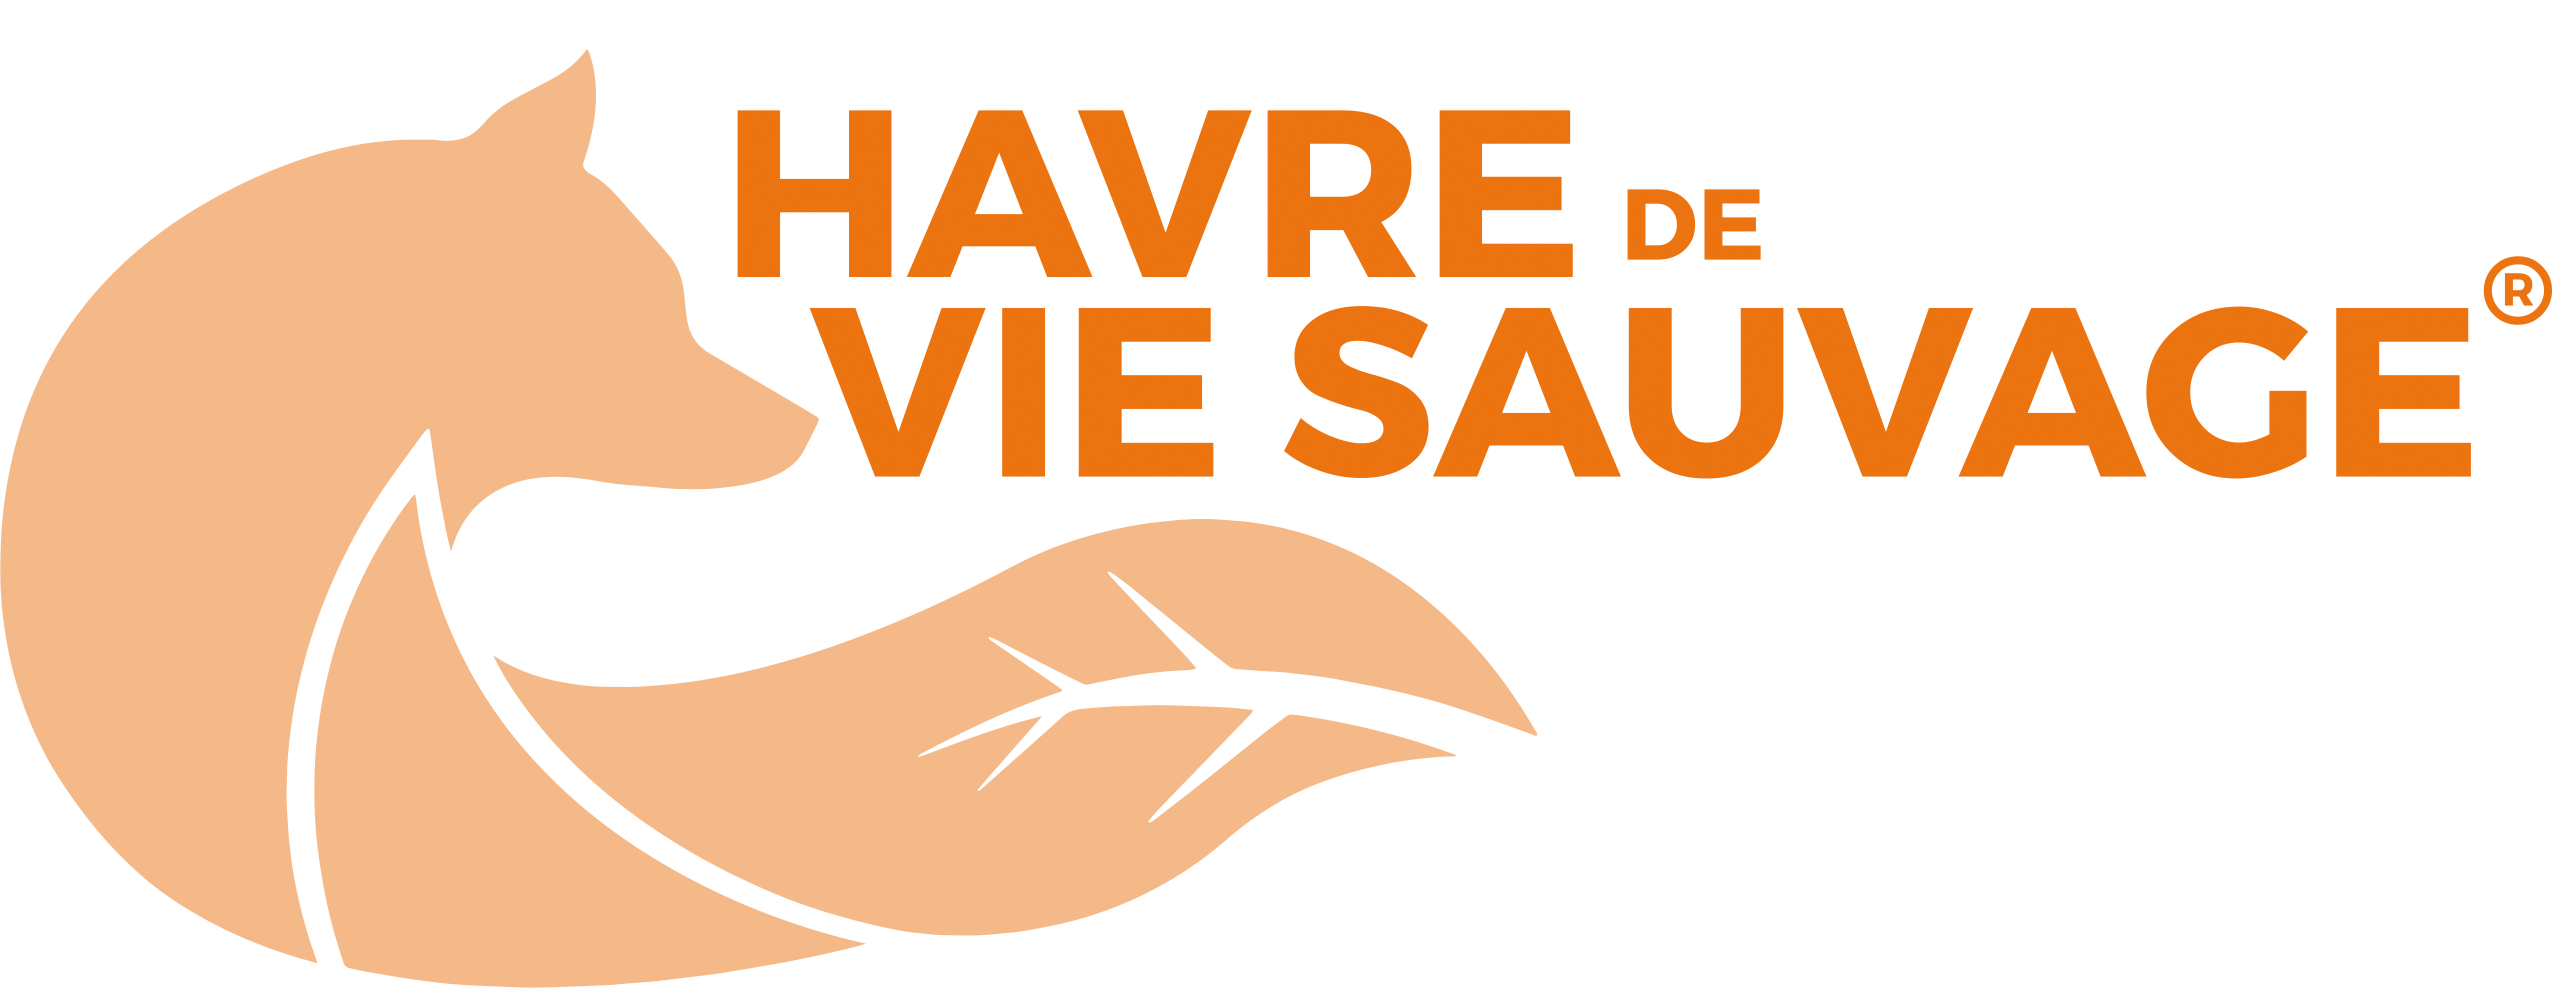 logo hvs